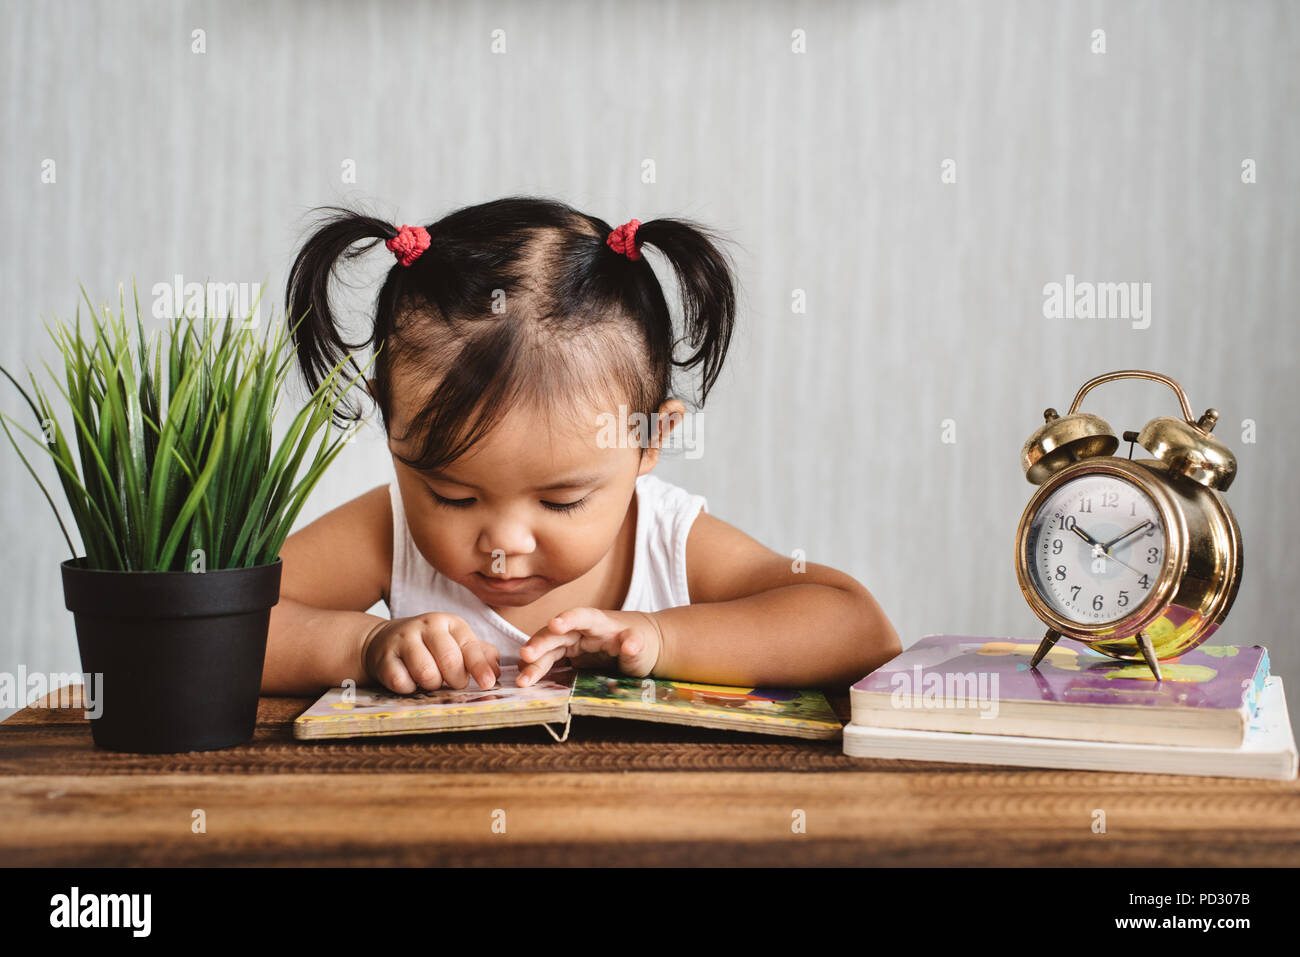 Asian baby toddler la lettura di un libro su un tavolo di legno. concetto di inizio istruzione, apprendimento infantile dello sviluppo, della crescita e della paternità e maternità Foto Stock